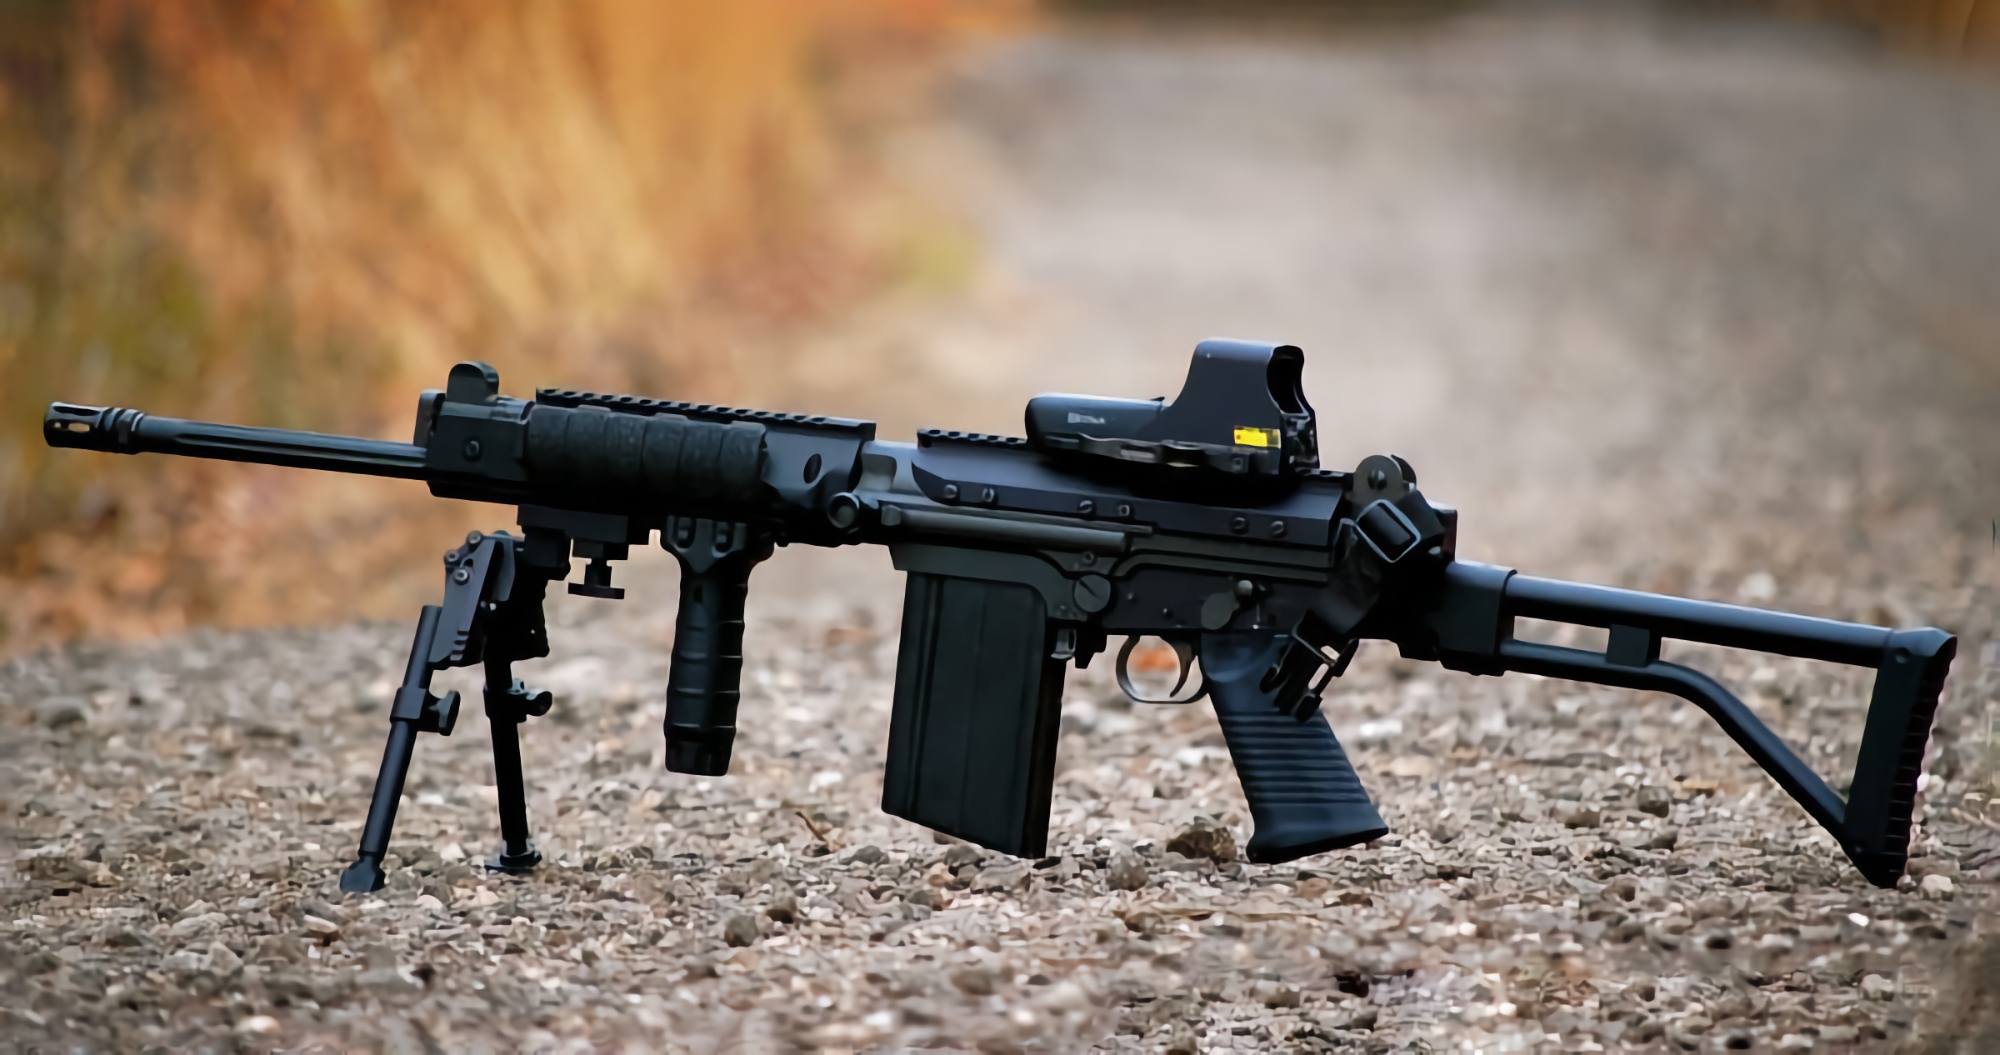 Ukraińscy żołnierze zaczęli używać karabinów automatycznych FN FAL, jednej z najbardziej znanych i powszechnych broni na świecie